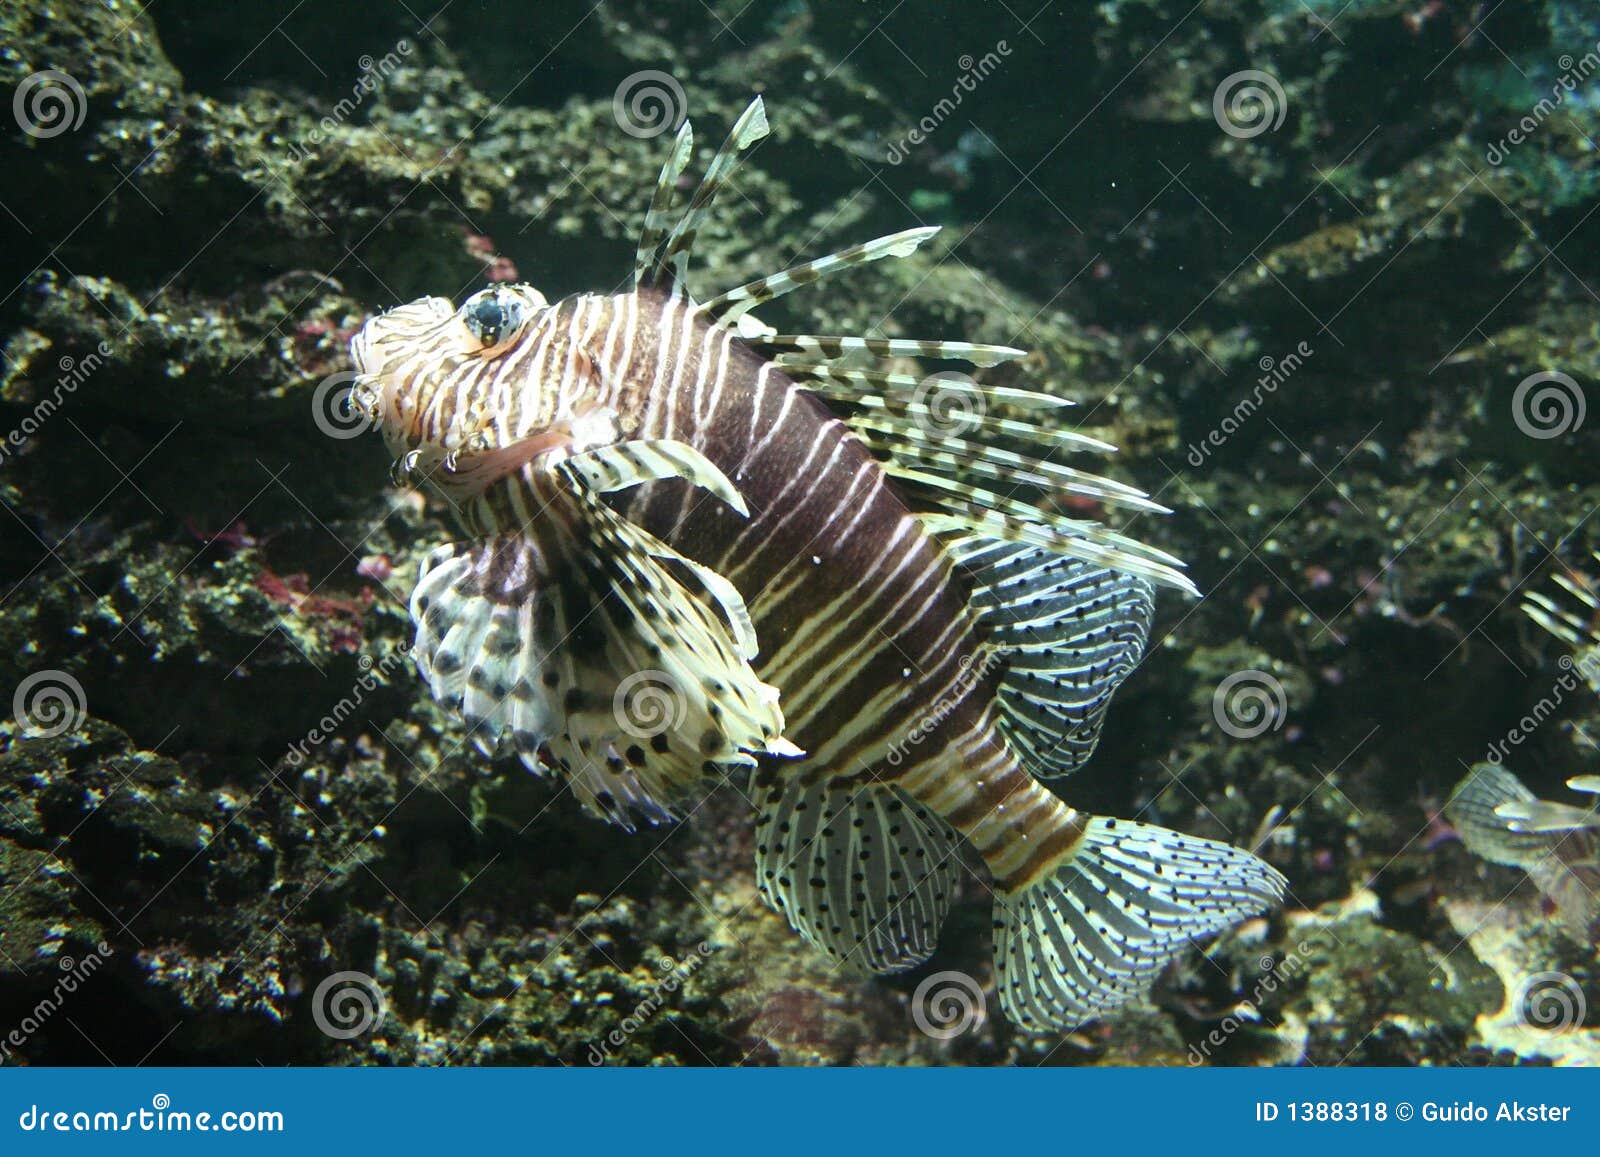 zebrafish clipart - photo #29